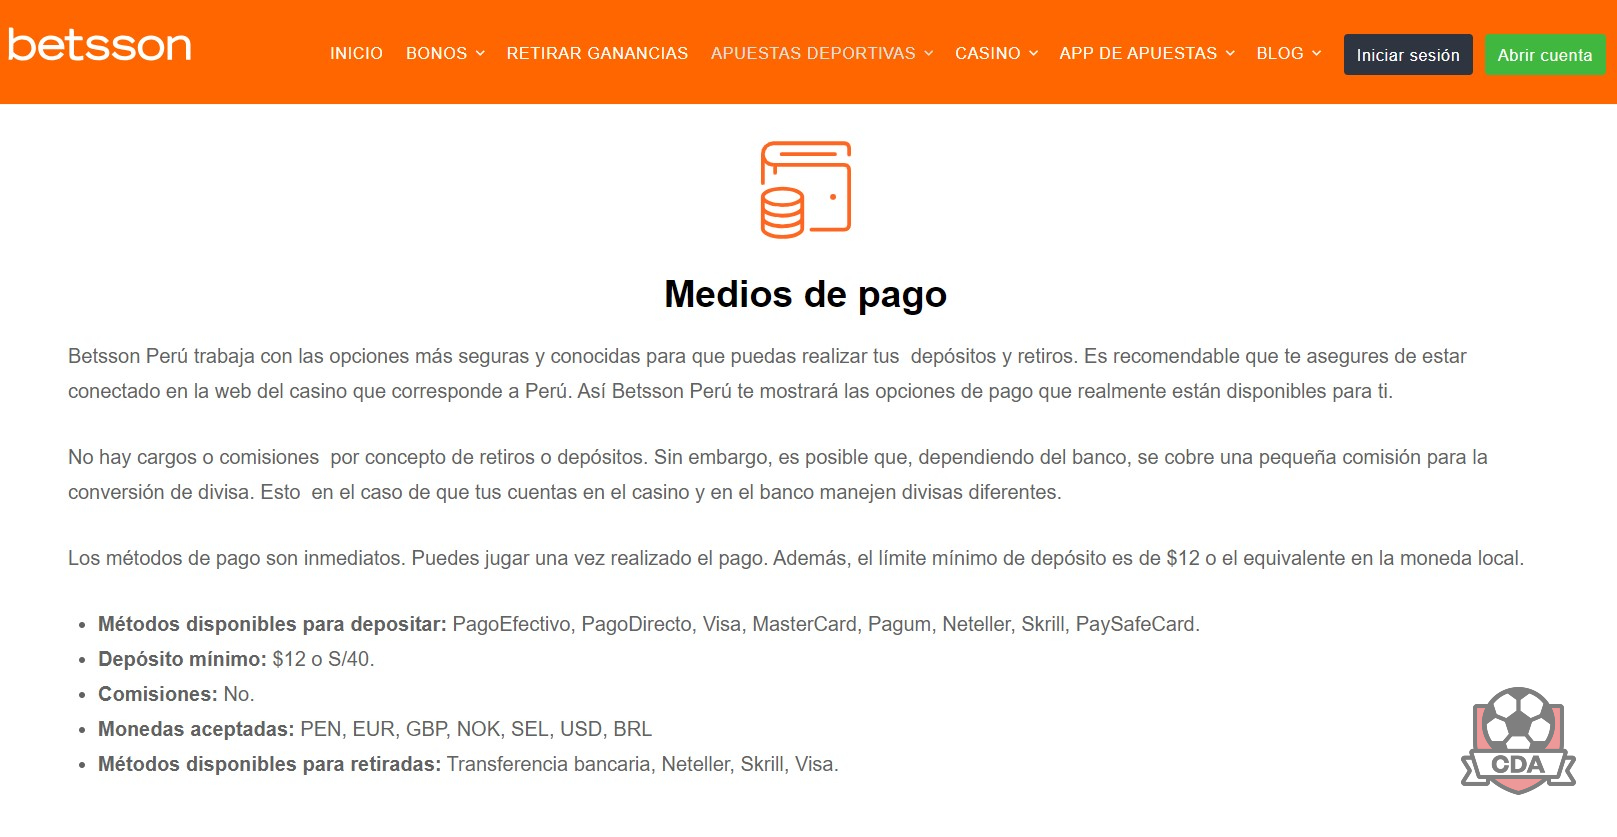 Betsson Perú: métodos de pago